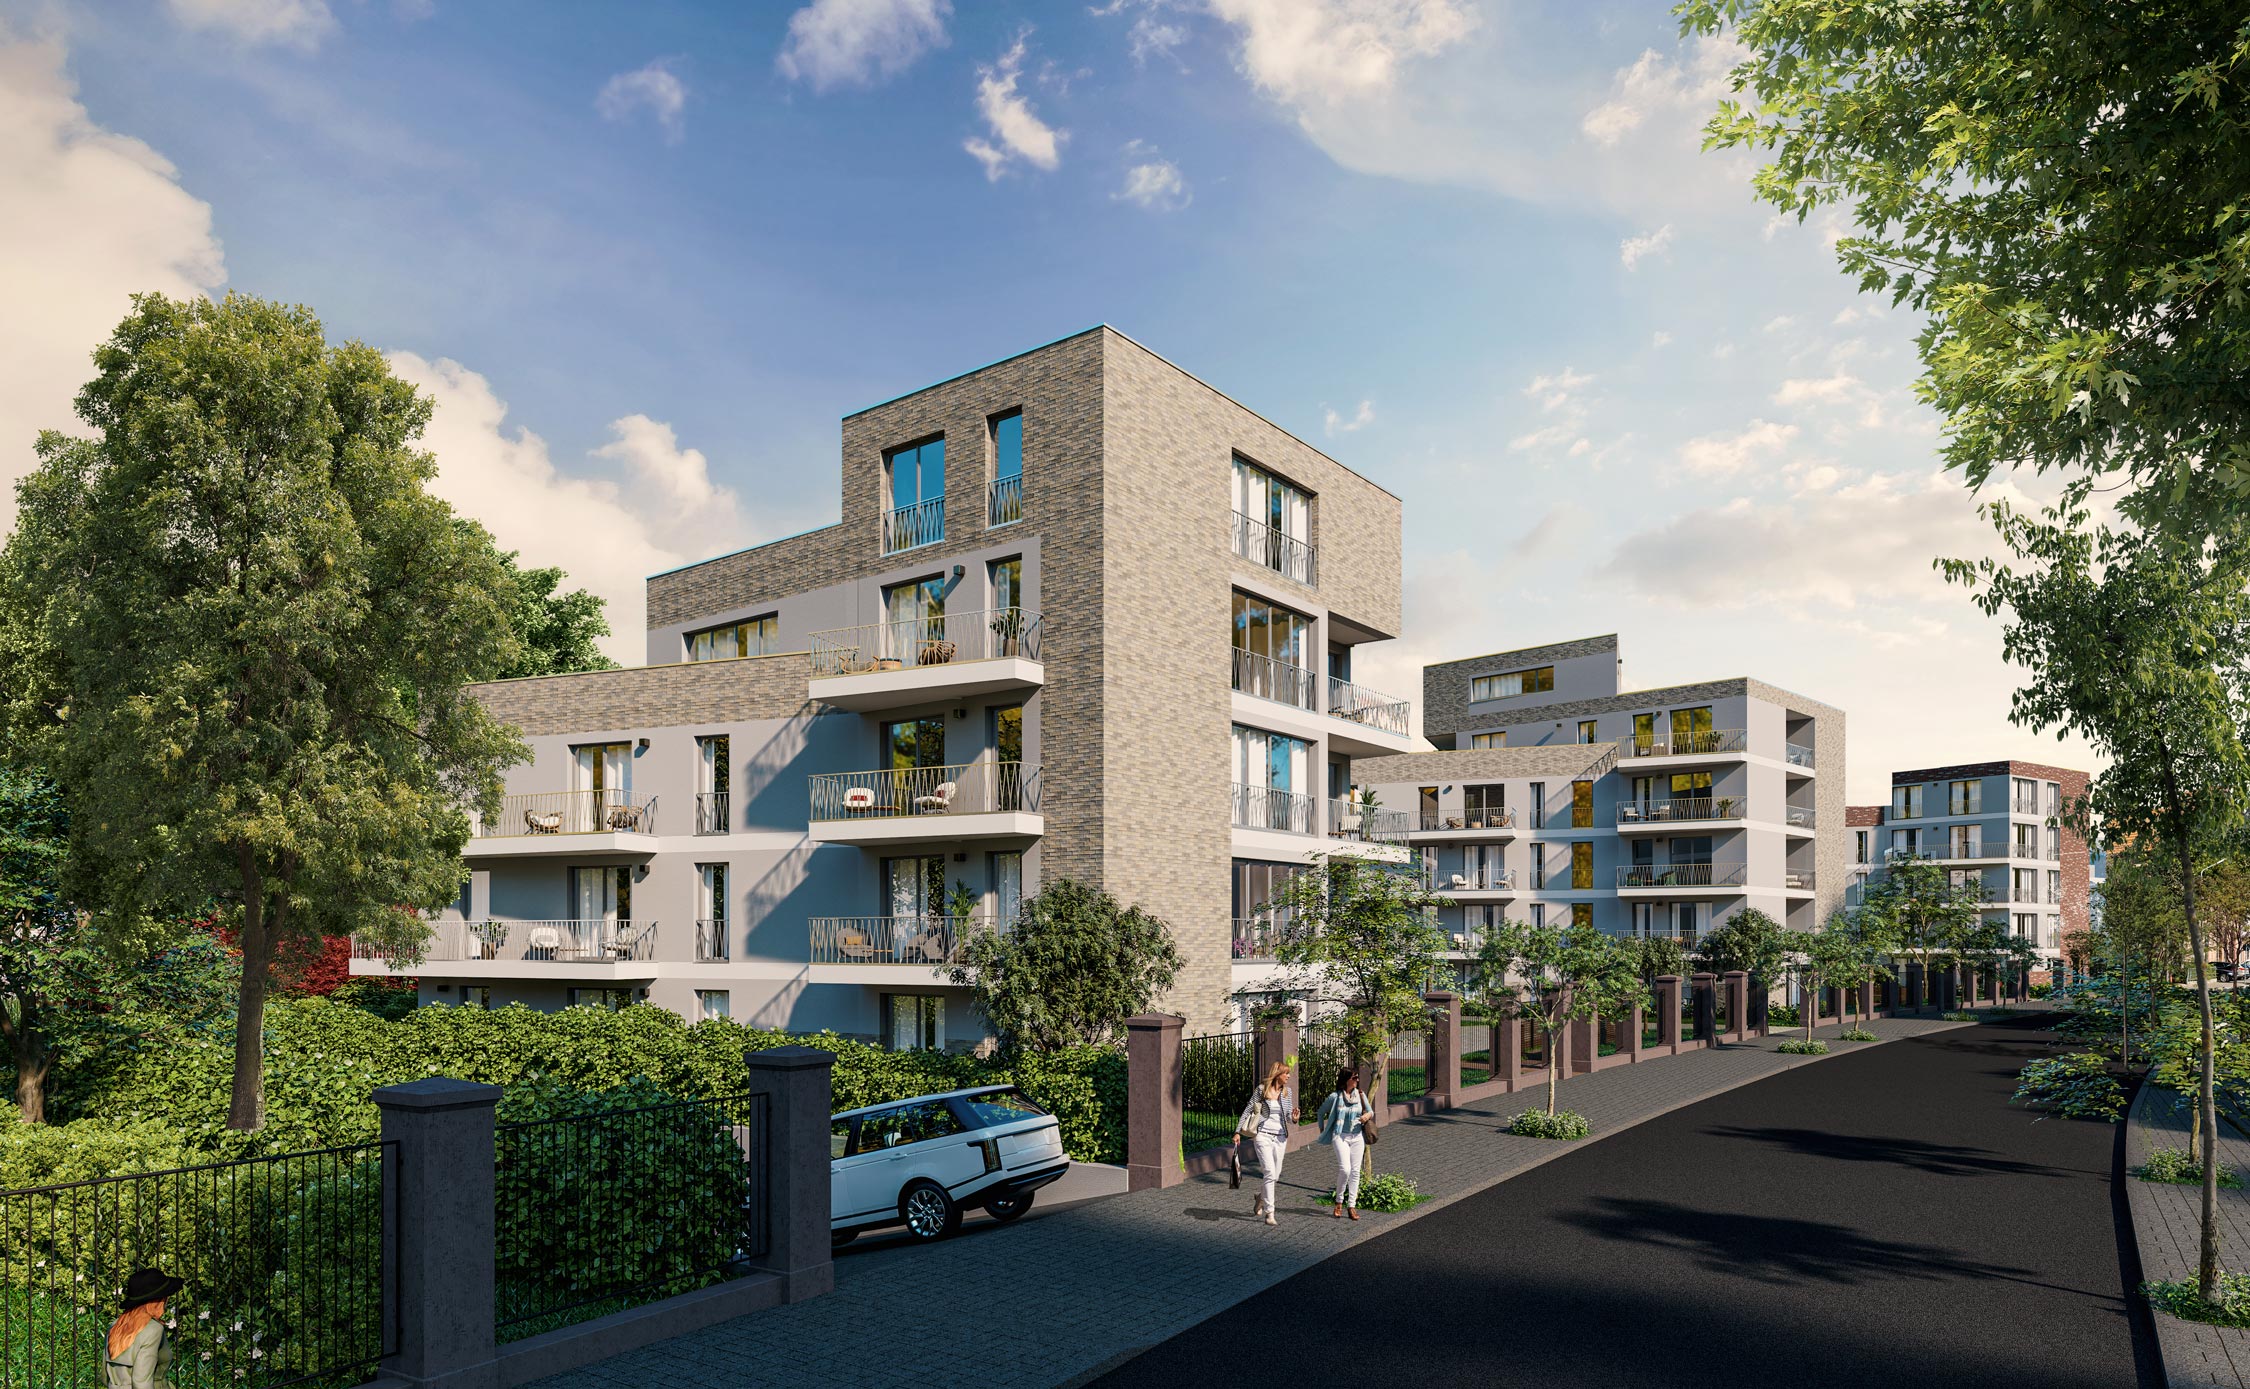 Spatenstich und Baubeginn für Eigentumswohnungen in der Puschkinstraße von Erfurt